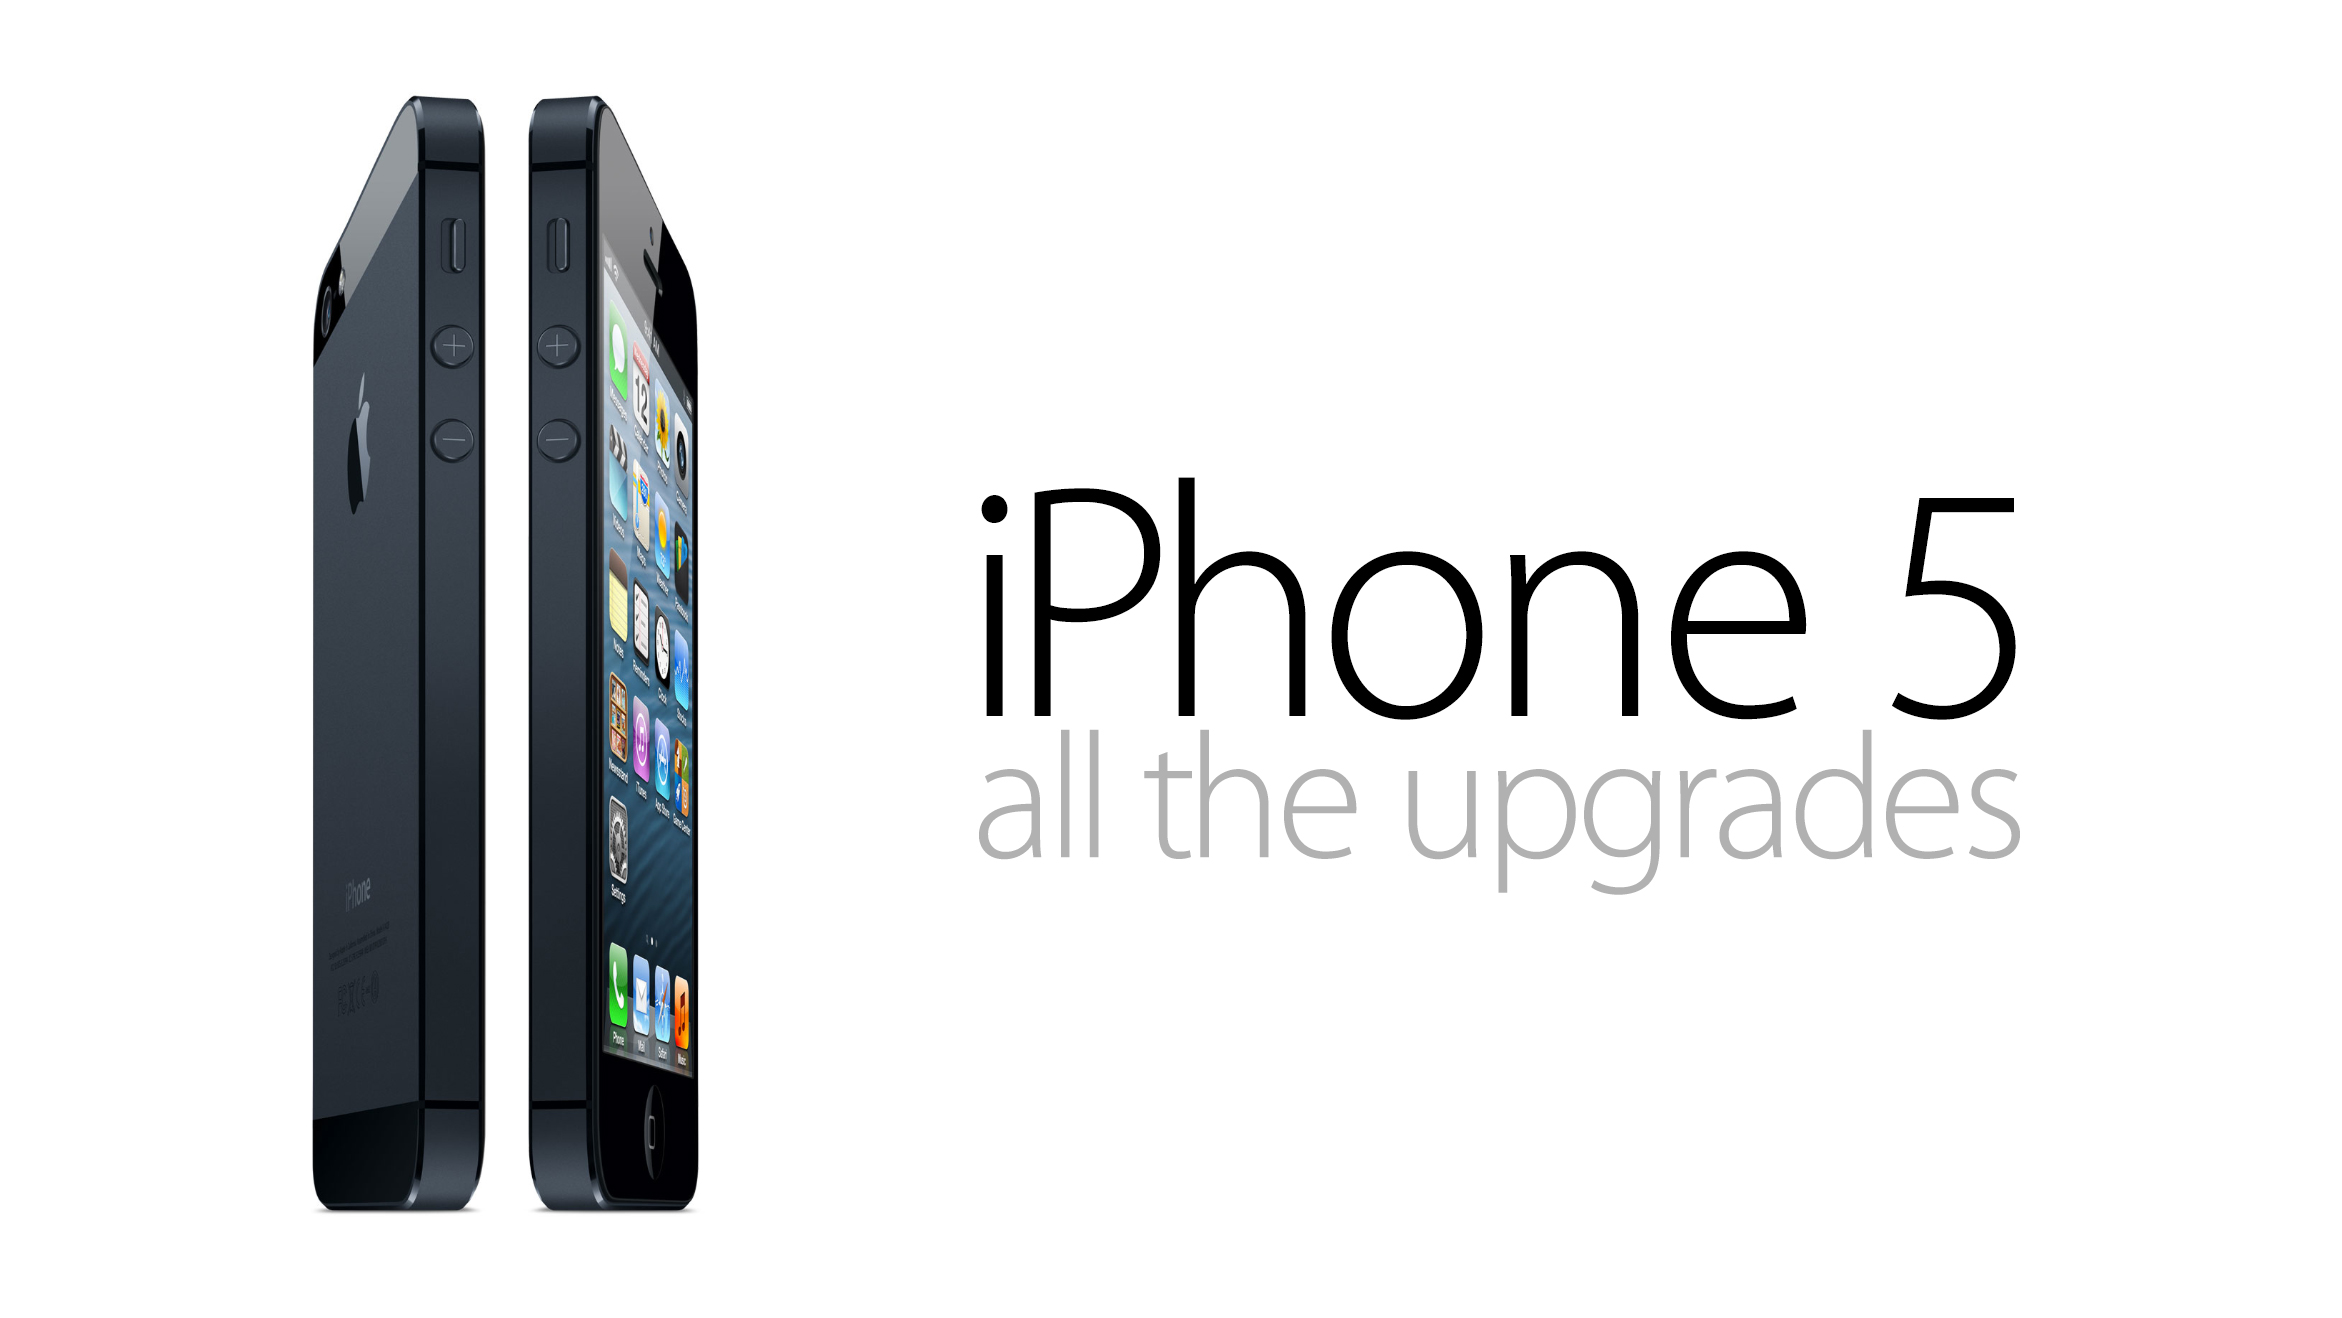 iPhone 5: A Roaring Success